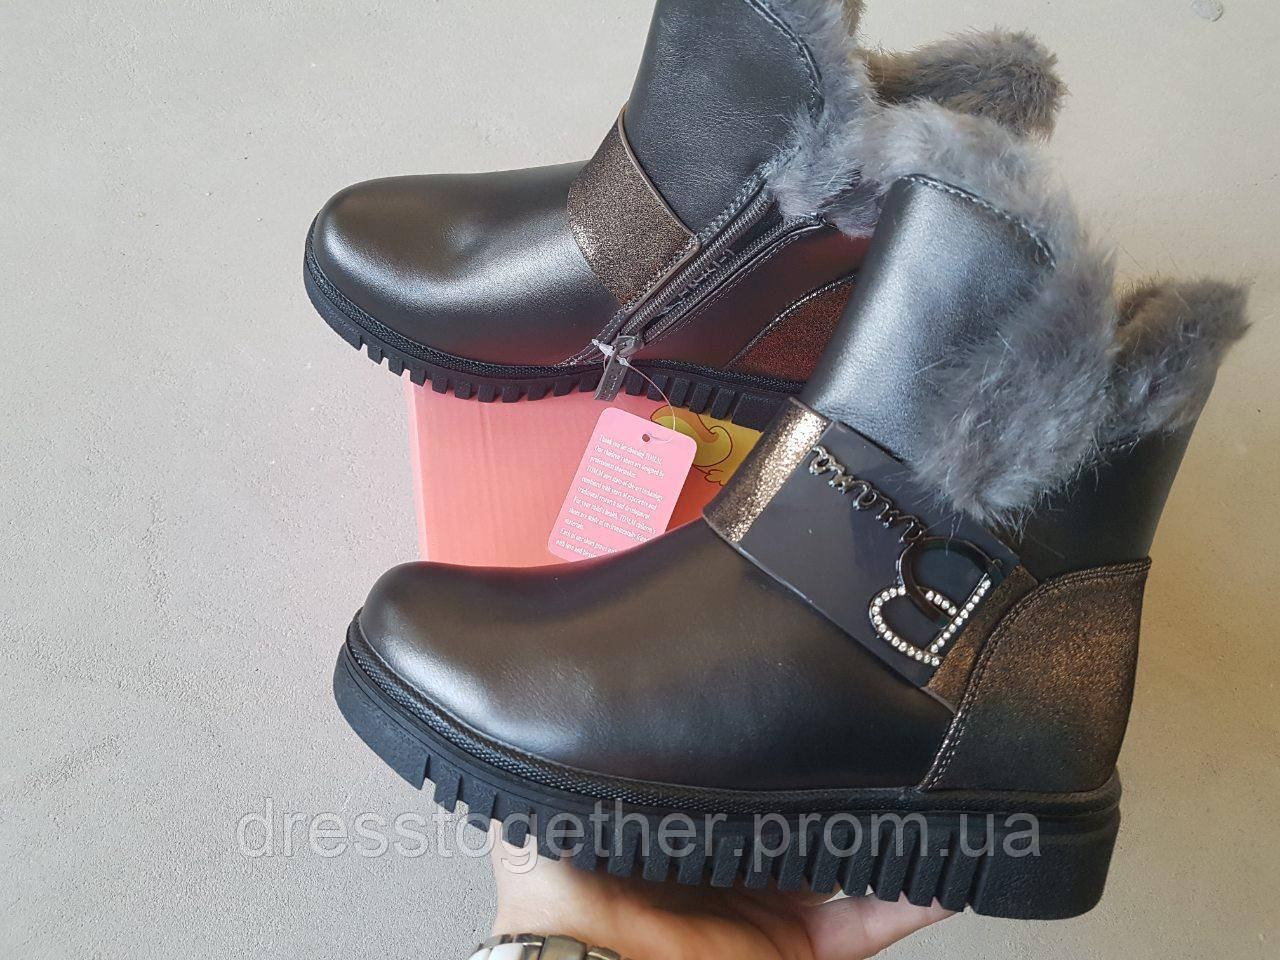 

Ботинки зимние для девочек ТОММ серые 33р